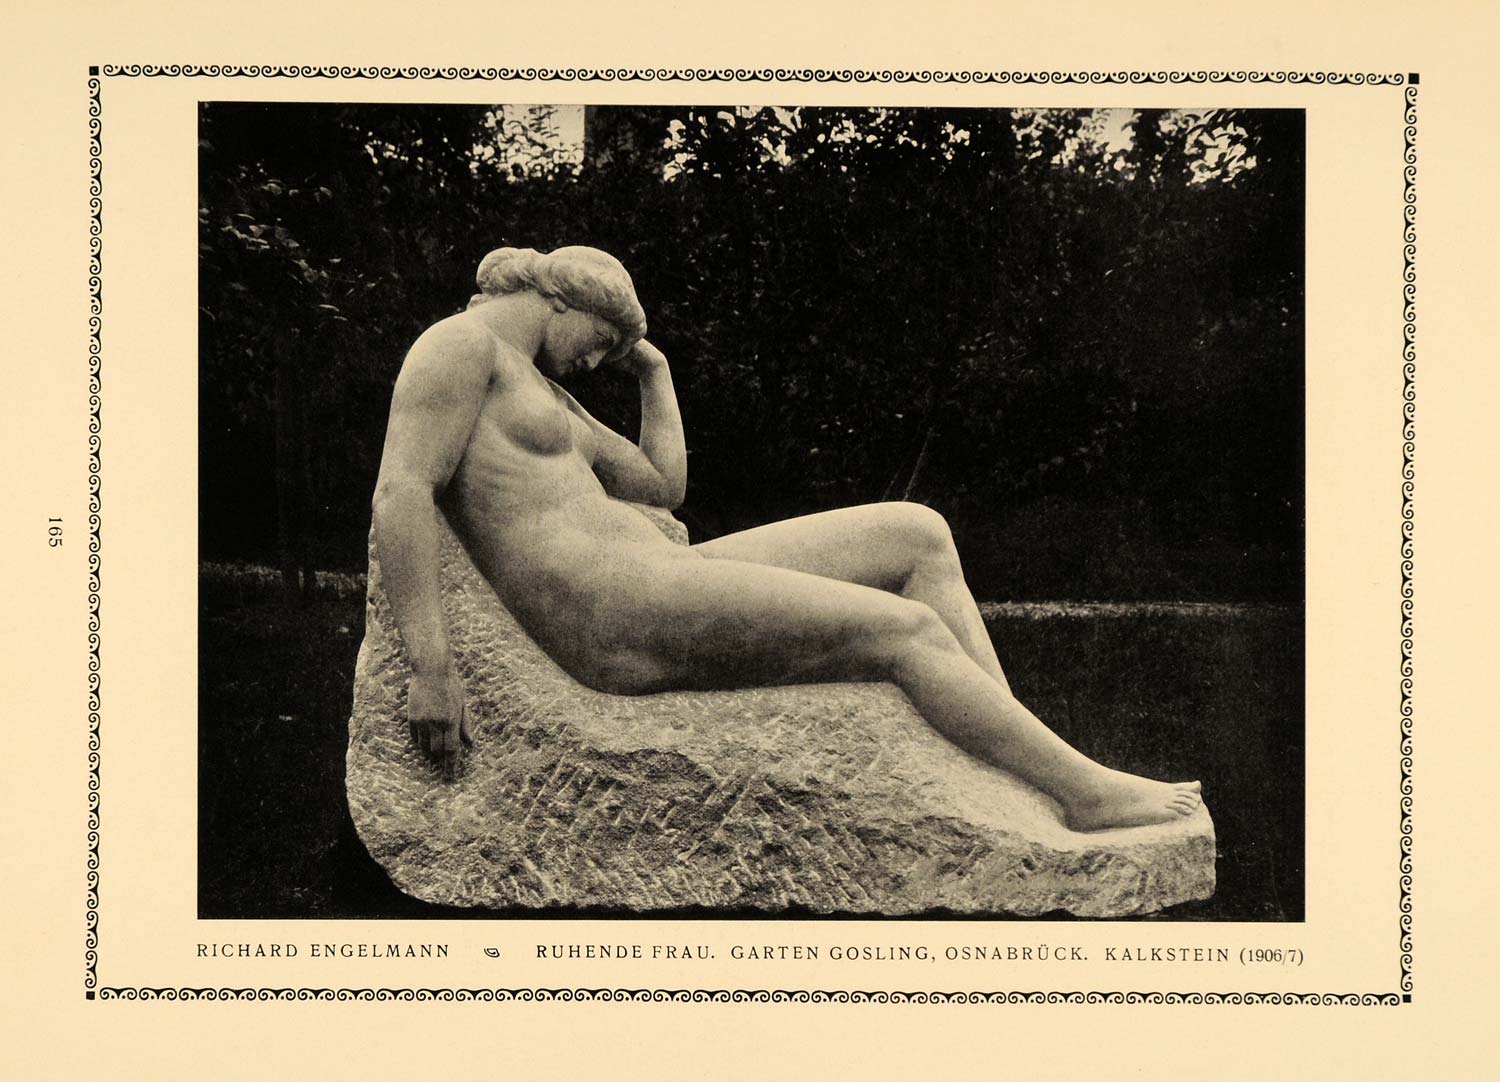 1913 Print Nude Woman Engelmann Garden Osnabruck Art Richard Engelmann DKU1